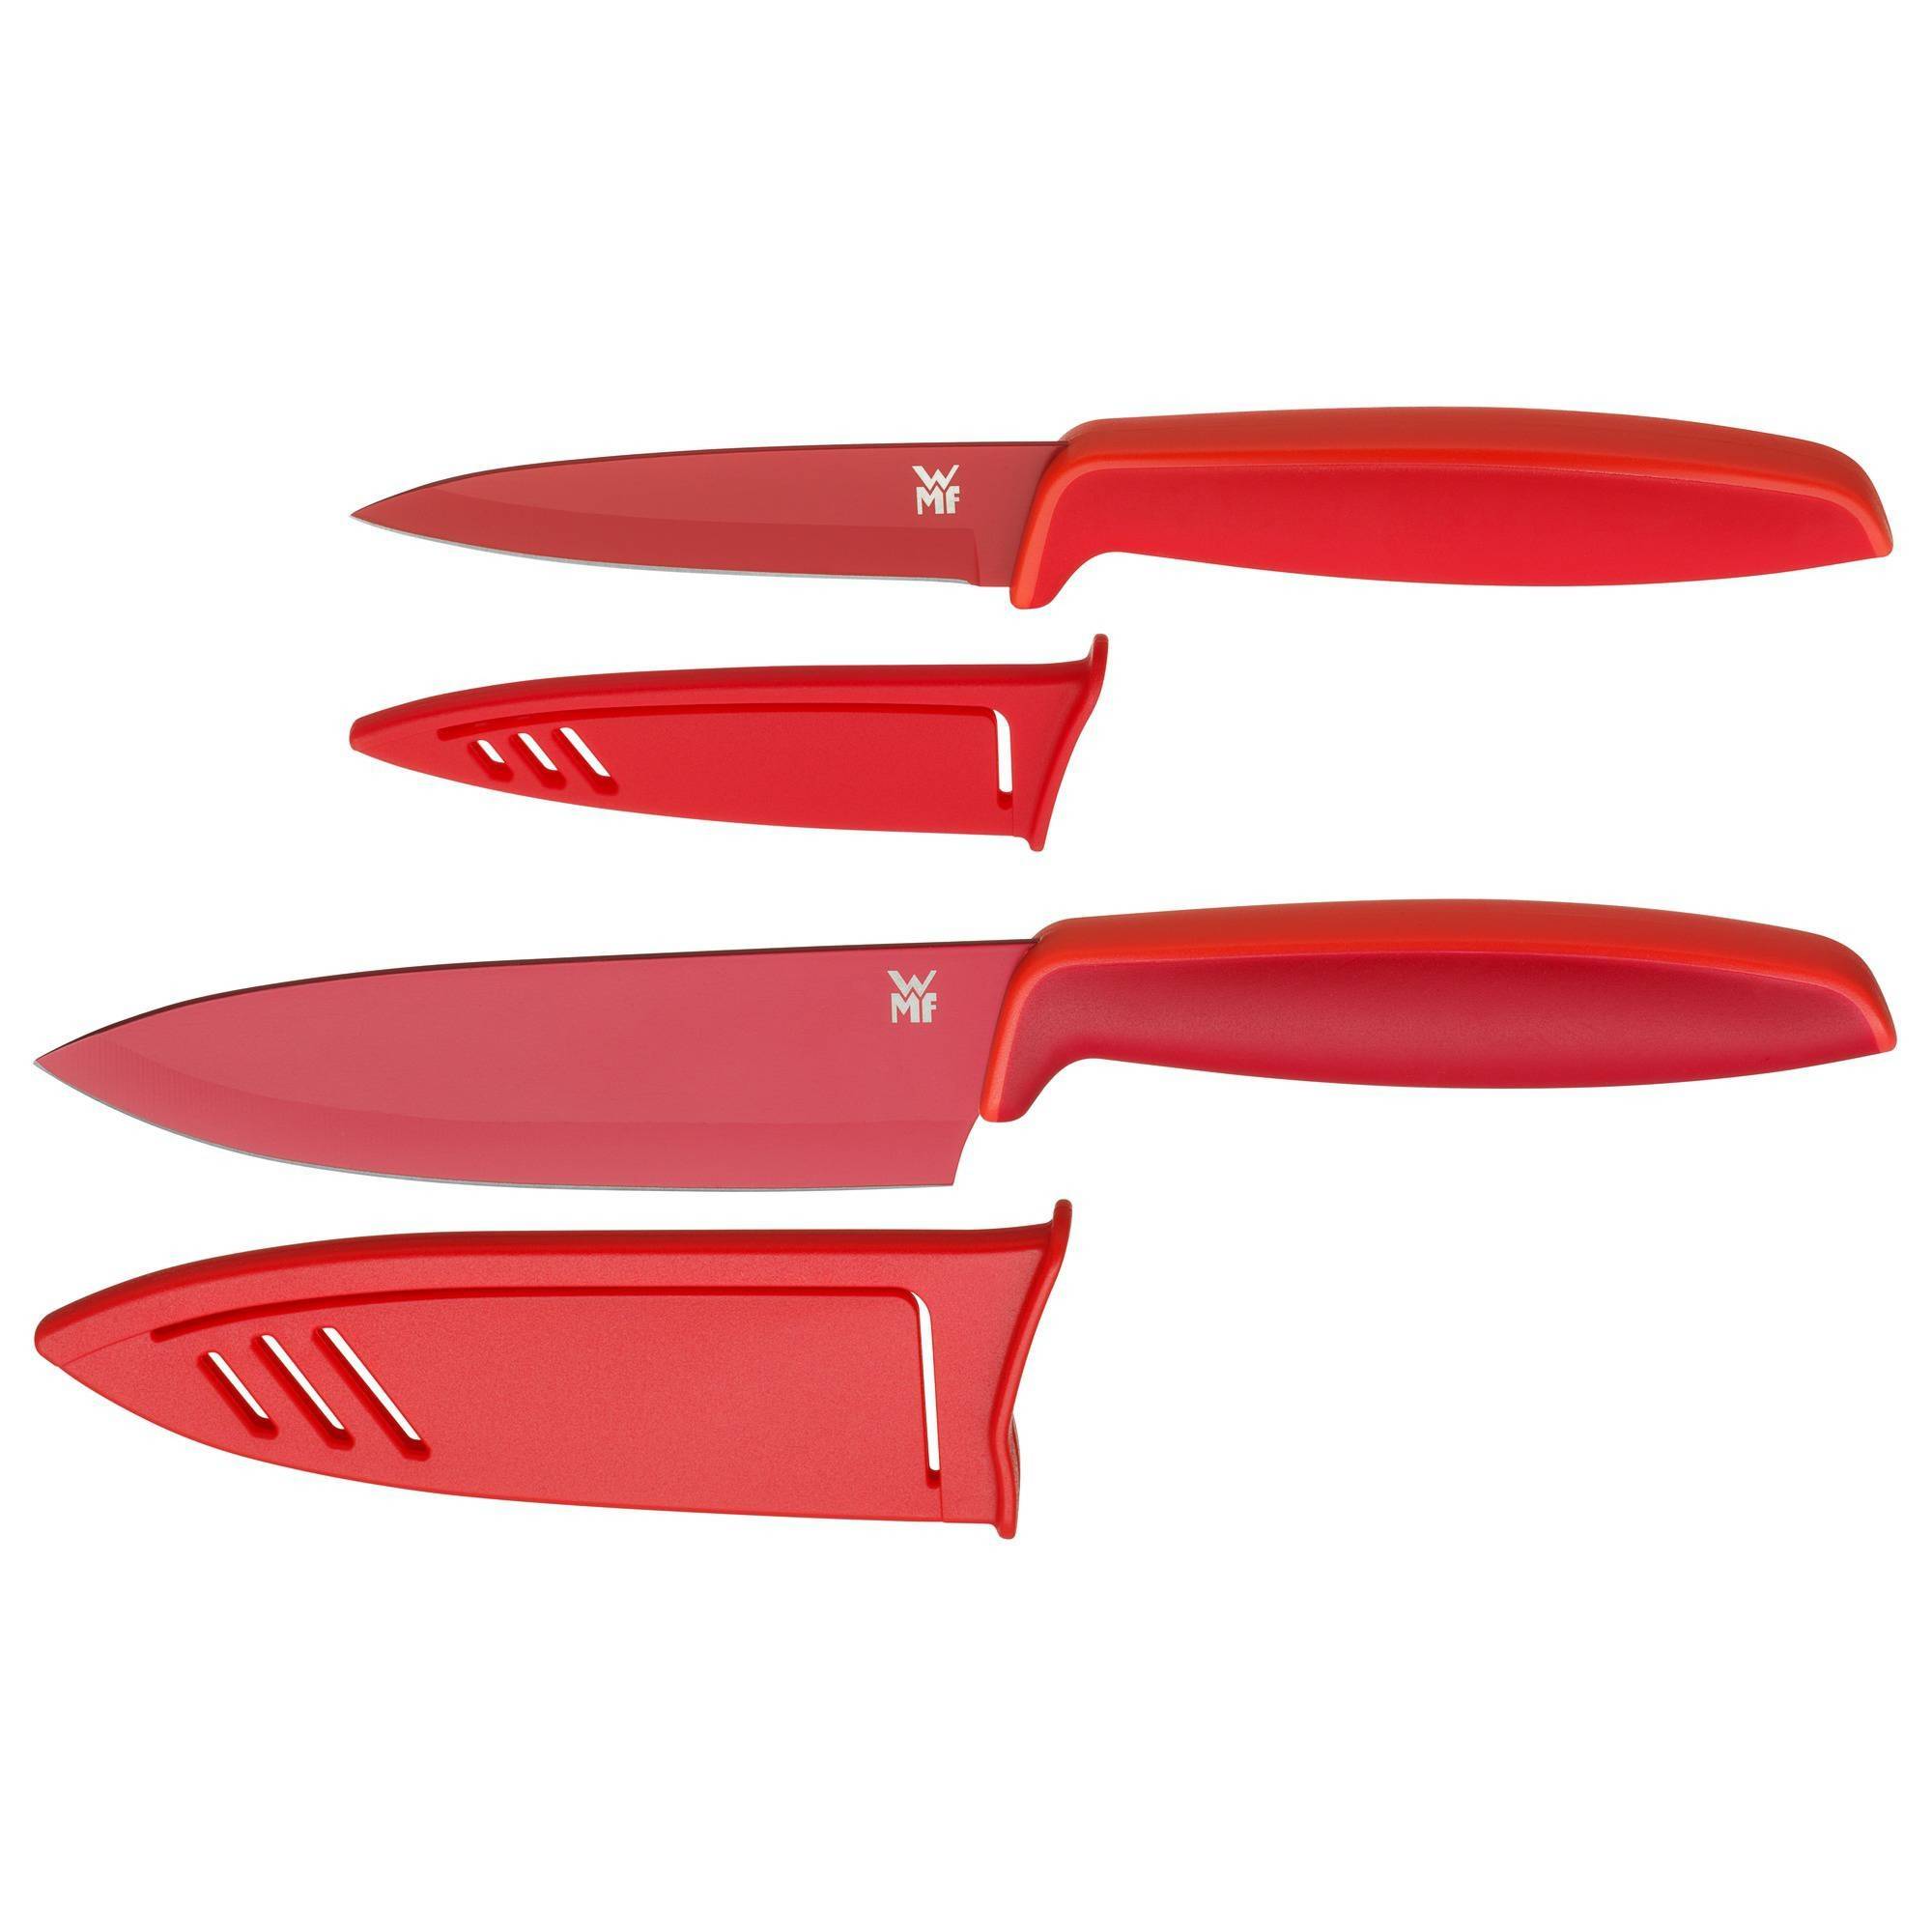 نکته خرید - قیمت روز چاقو آشپزخانه دبلیو ام اف مدل touch مجموعه ۲ عددی خرید